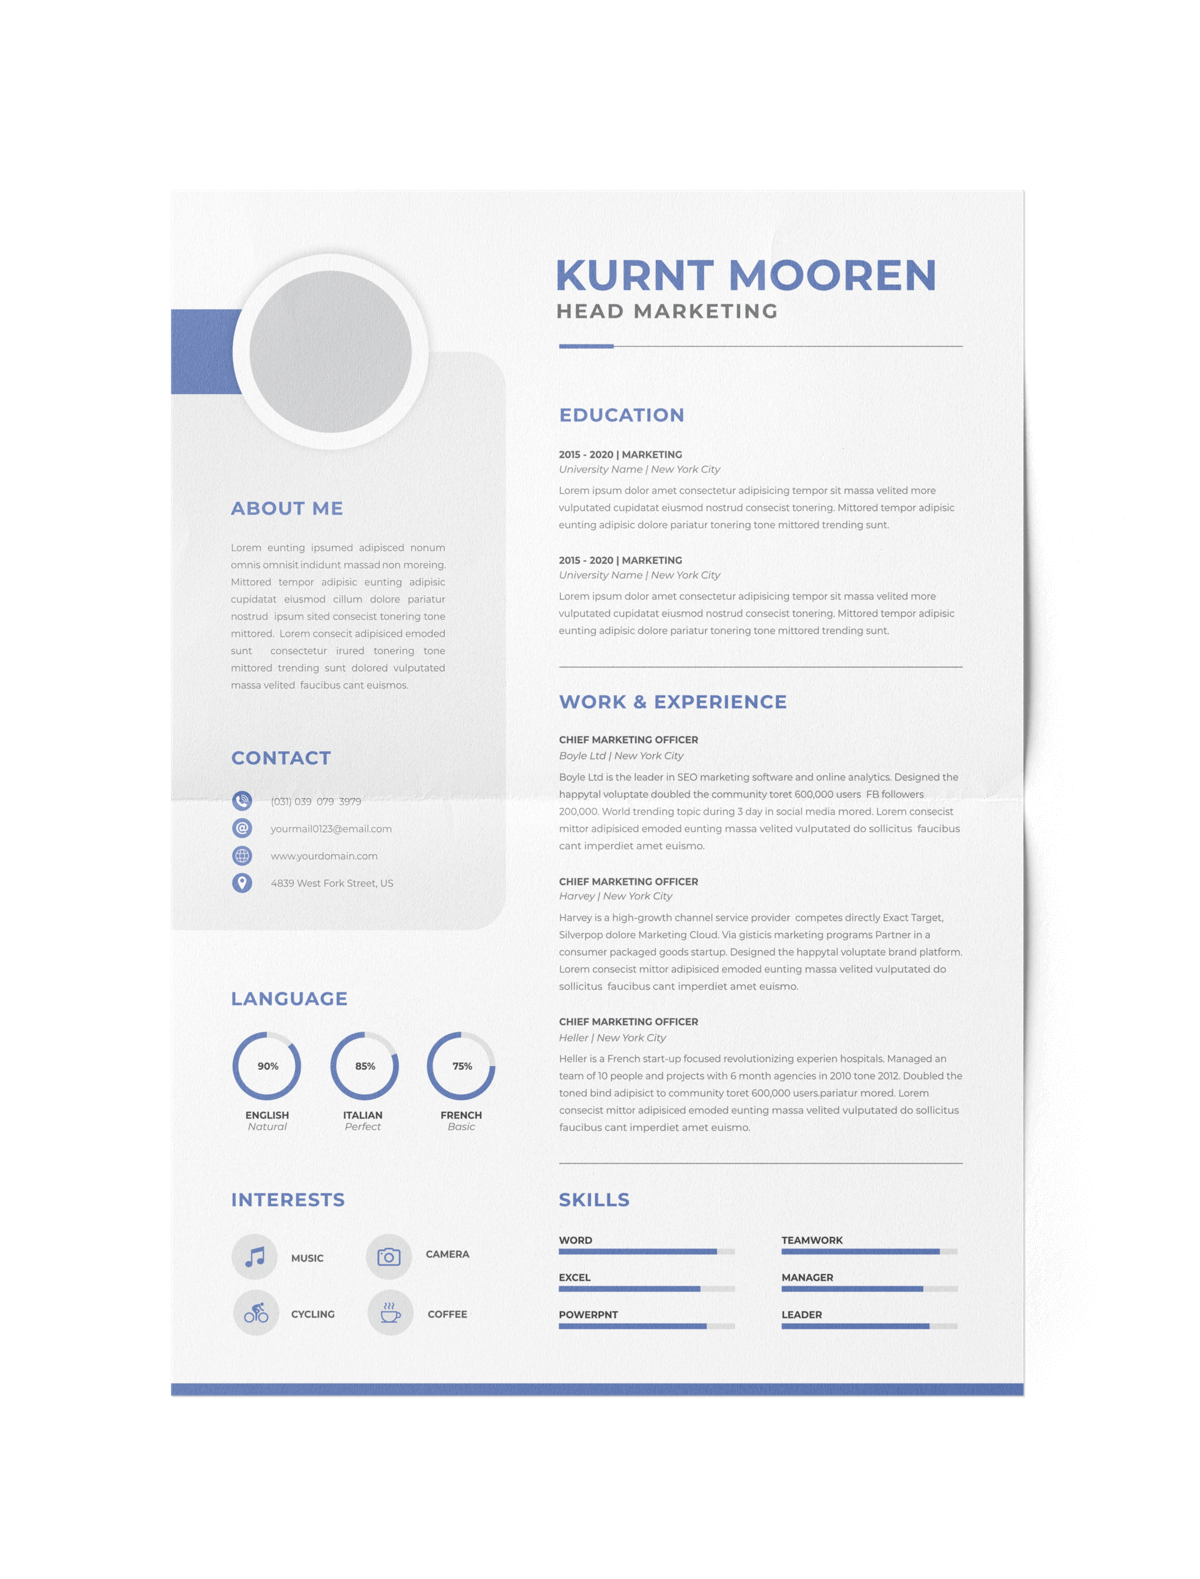 CV #157 Kurt Mooren